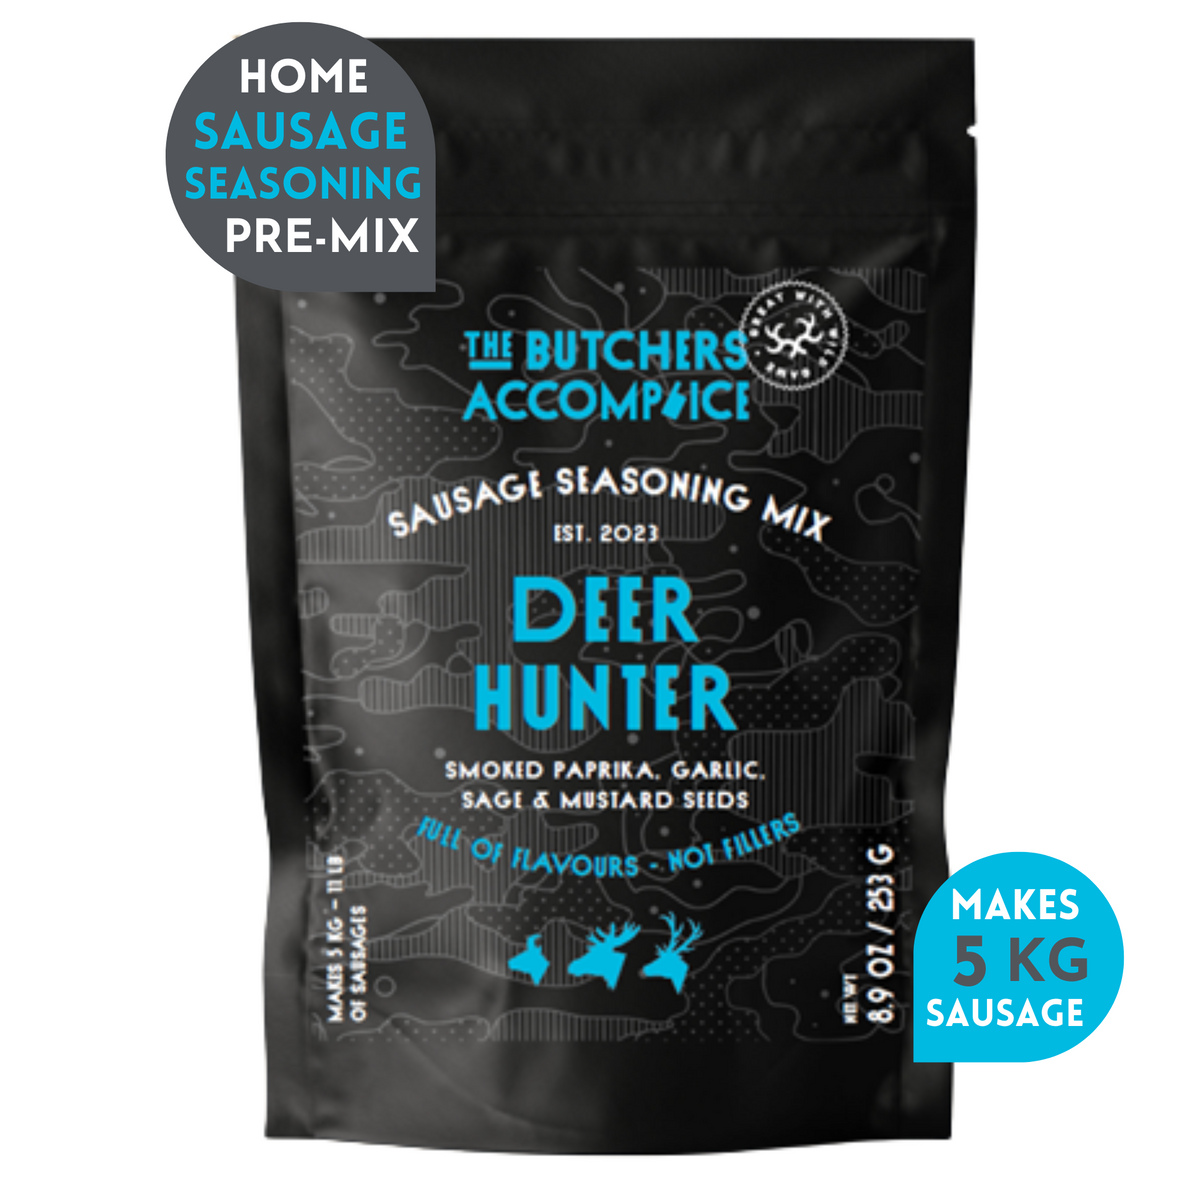 Sausage Seasoning Pack: Deer Hunter (Venison) Sausage 253g